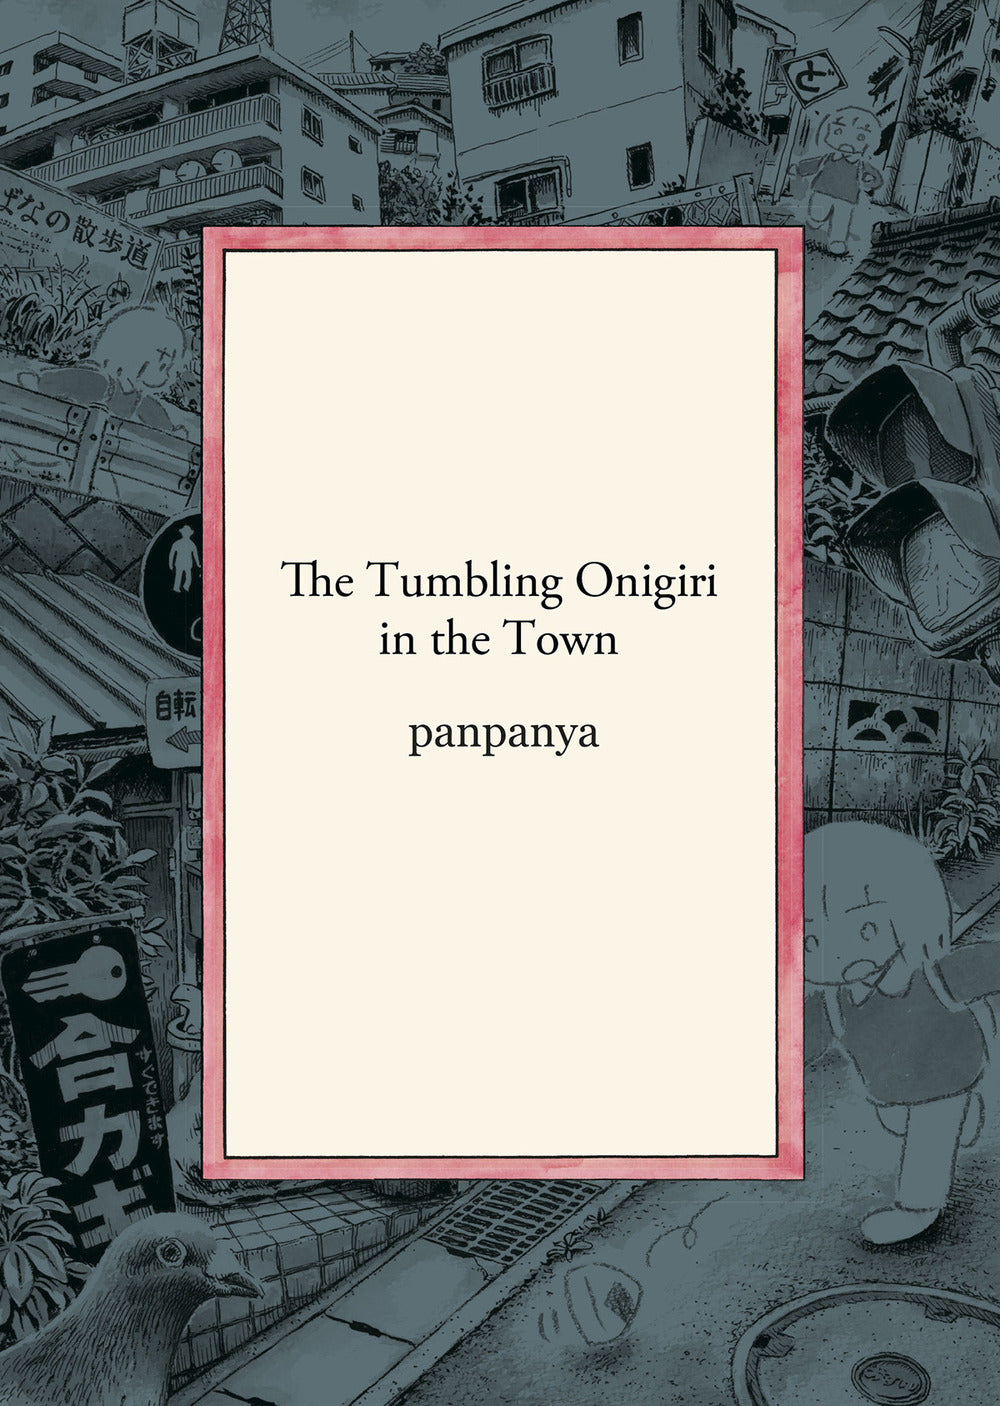 The tumbling onigiri in the town.